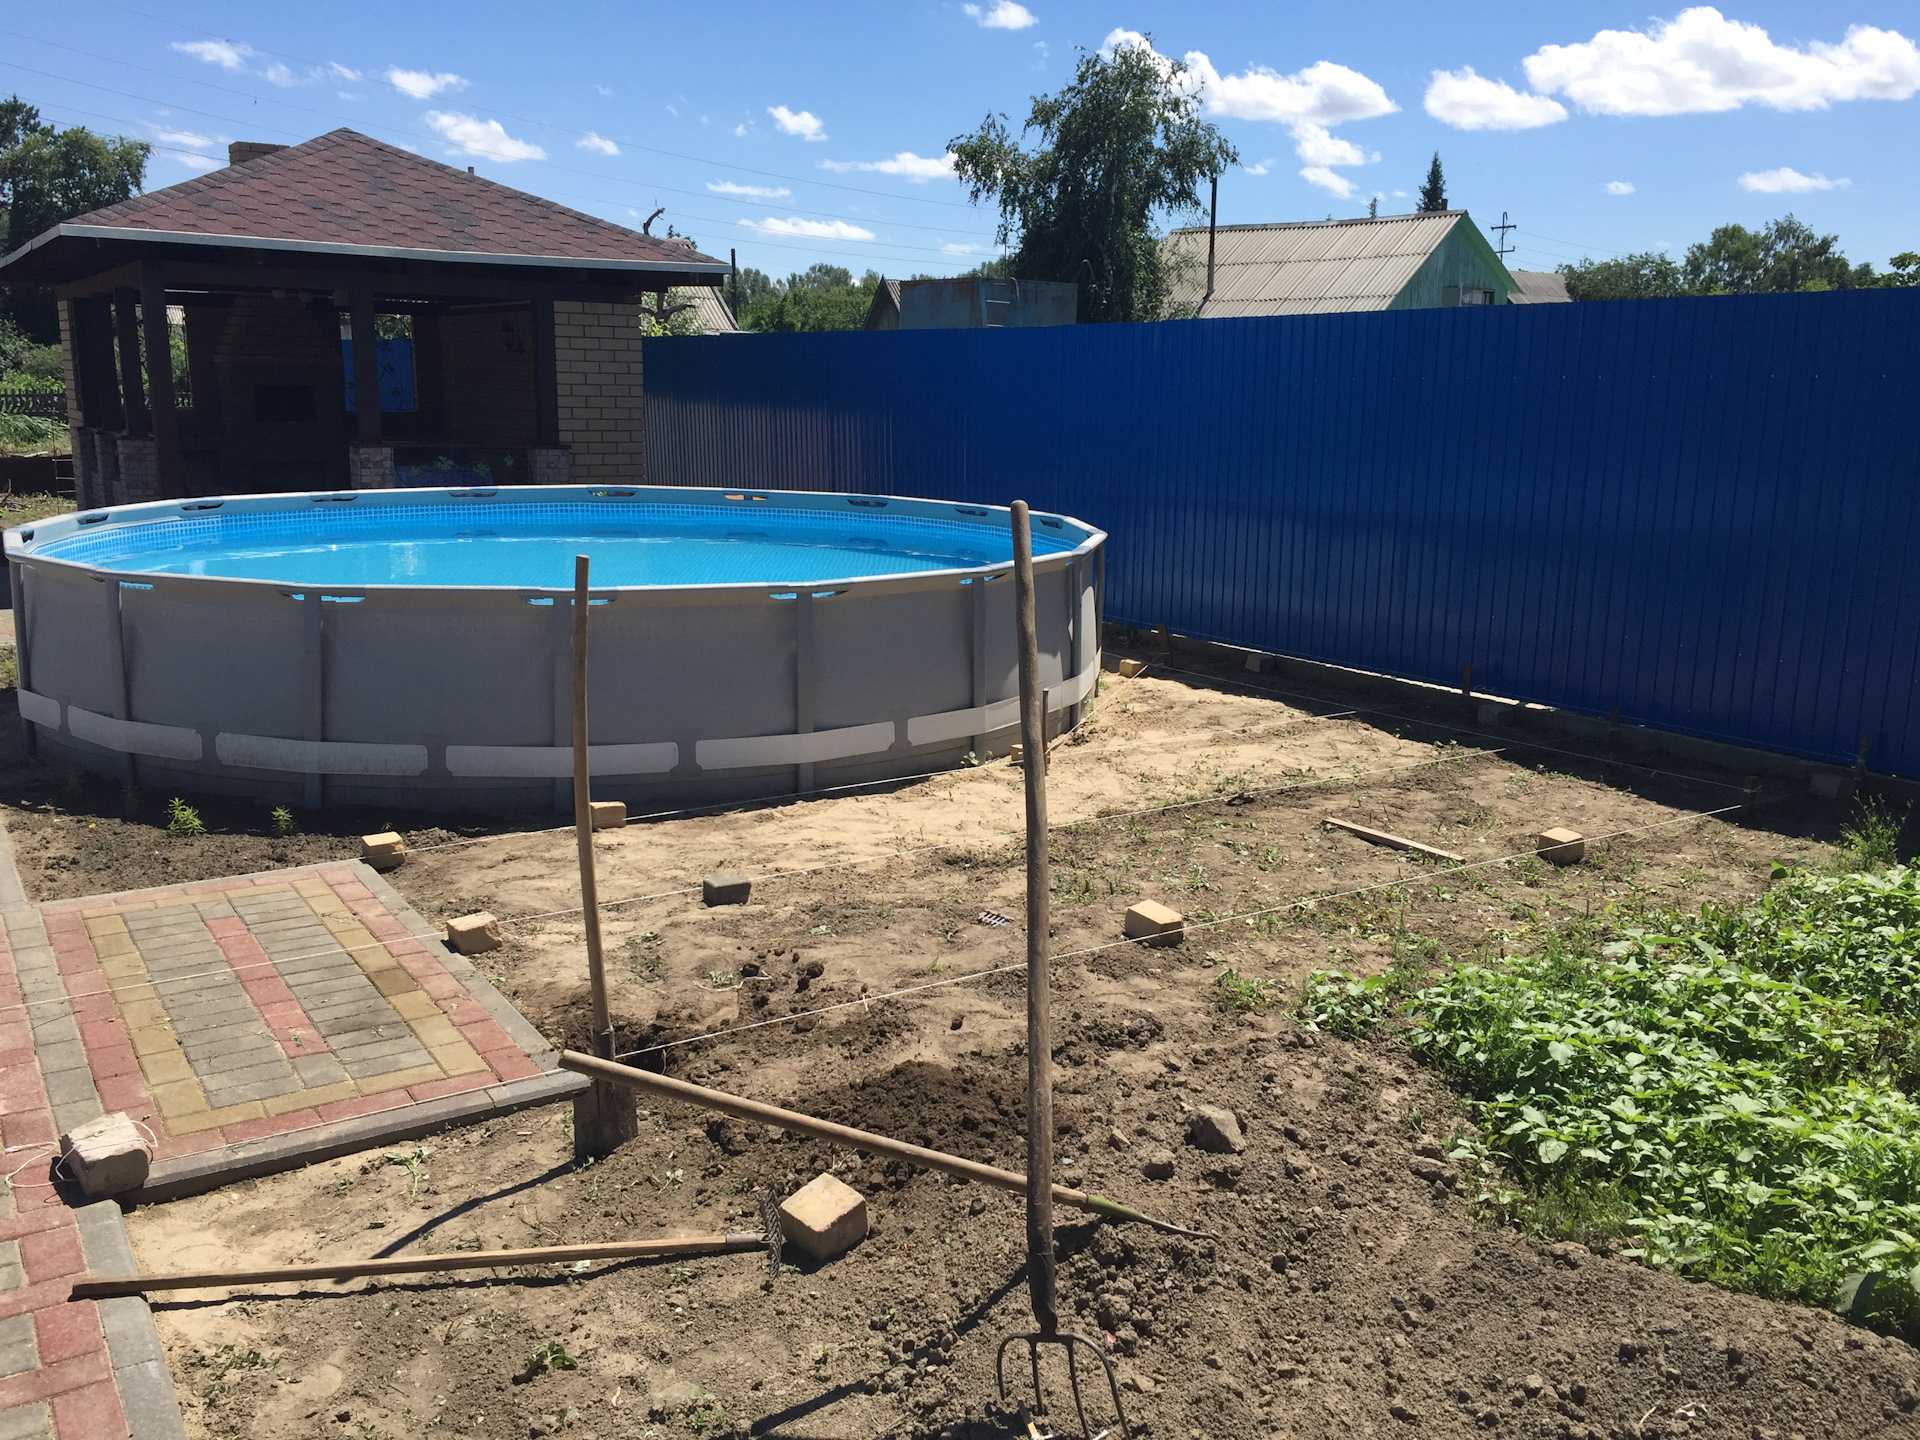 Сделать бассейн на даче — просто! супер идеи простых бассейнов